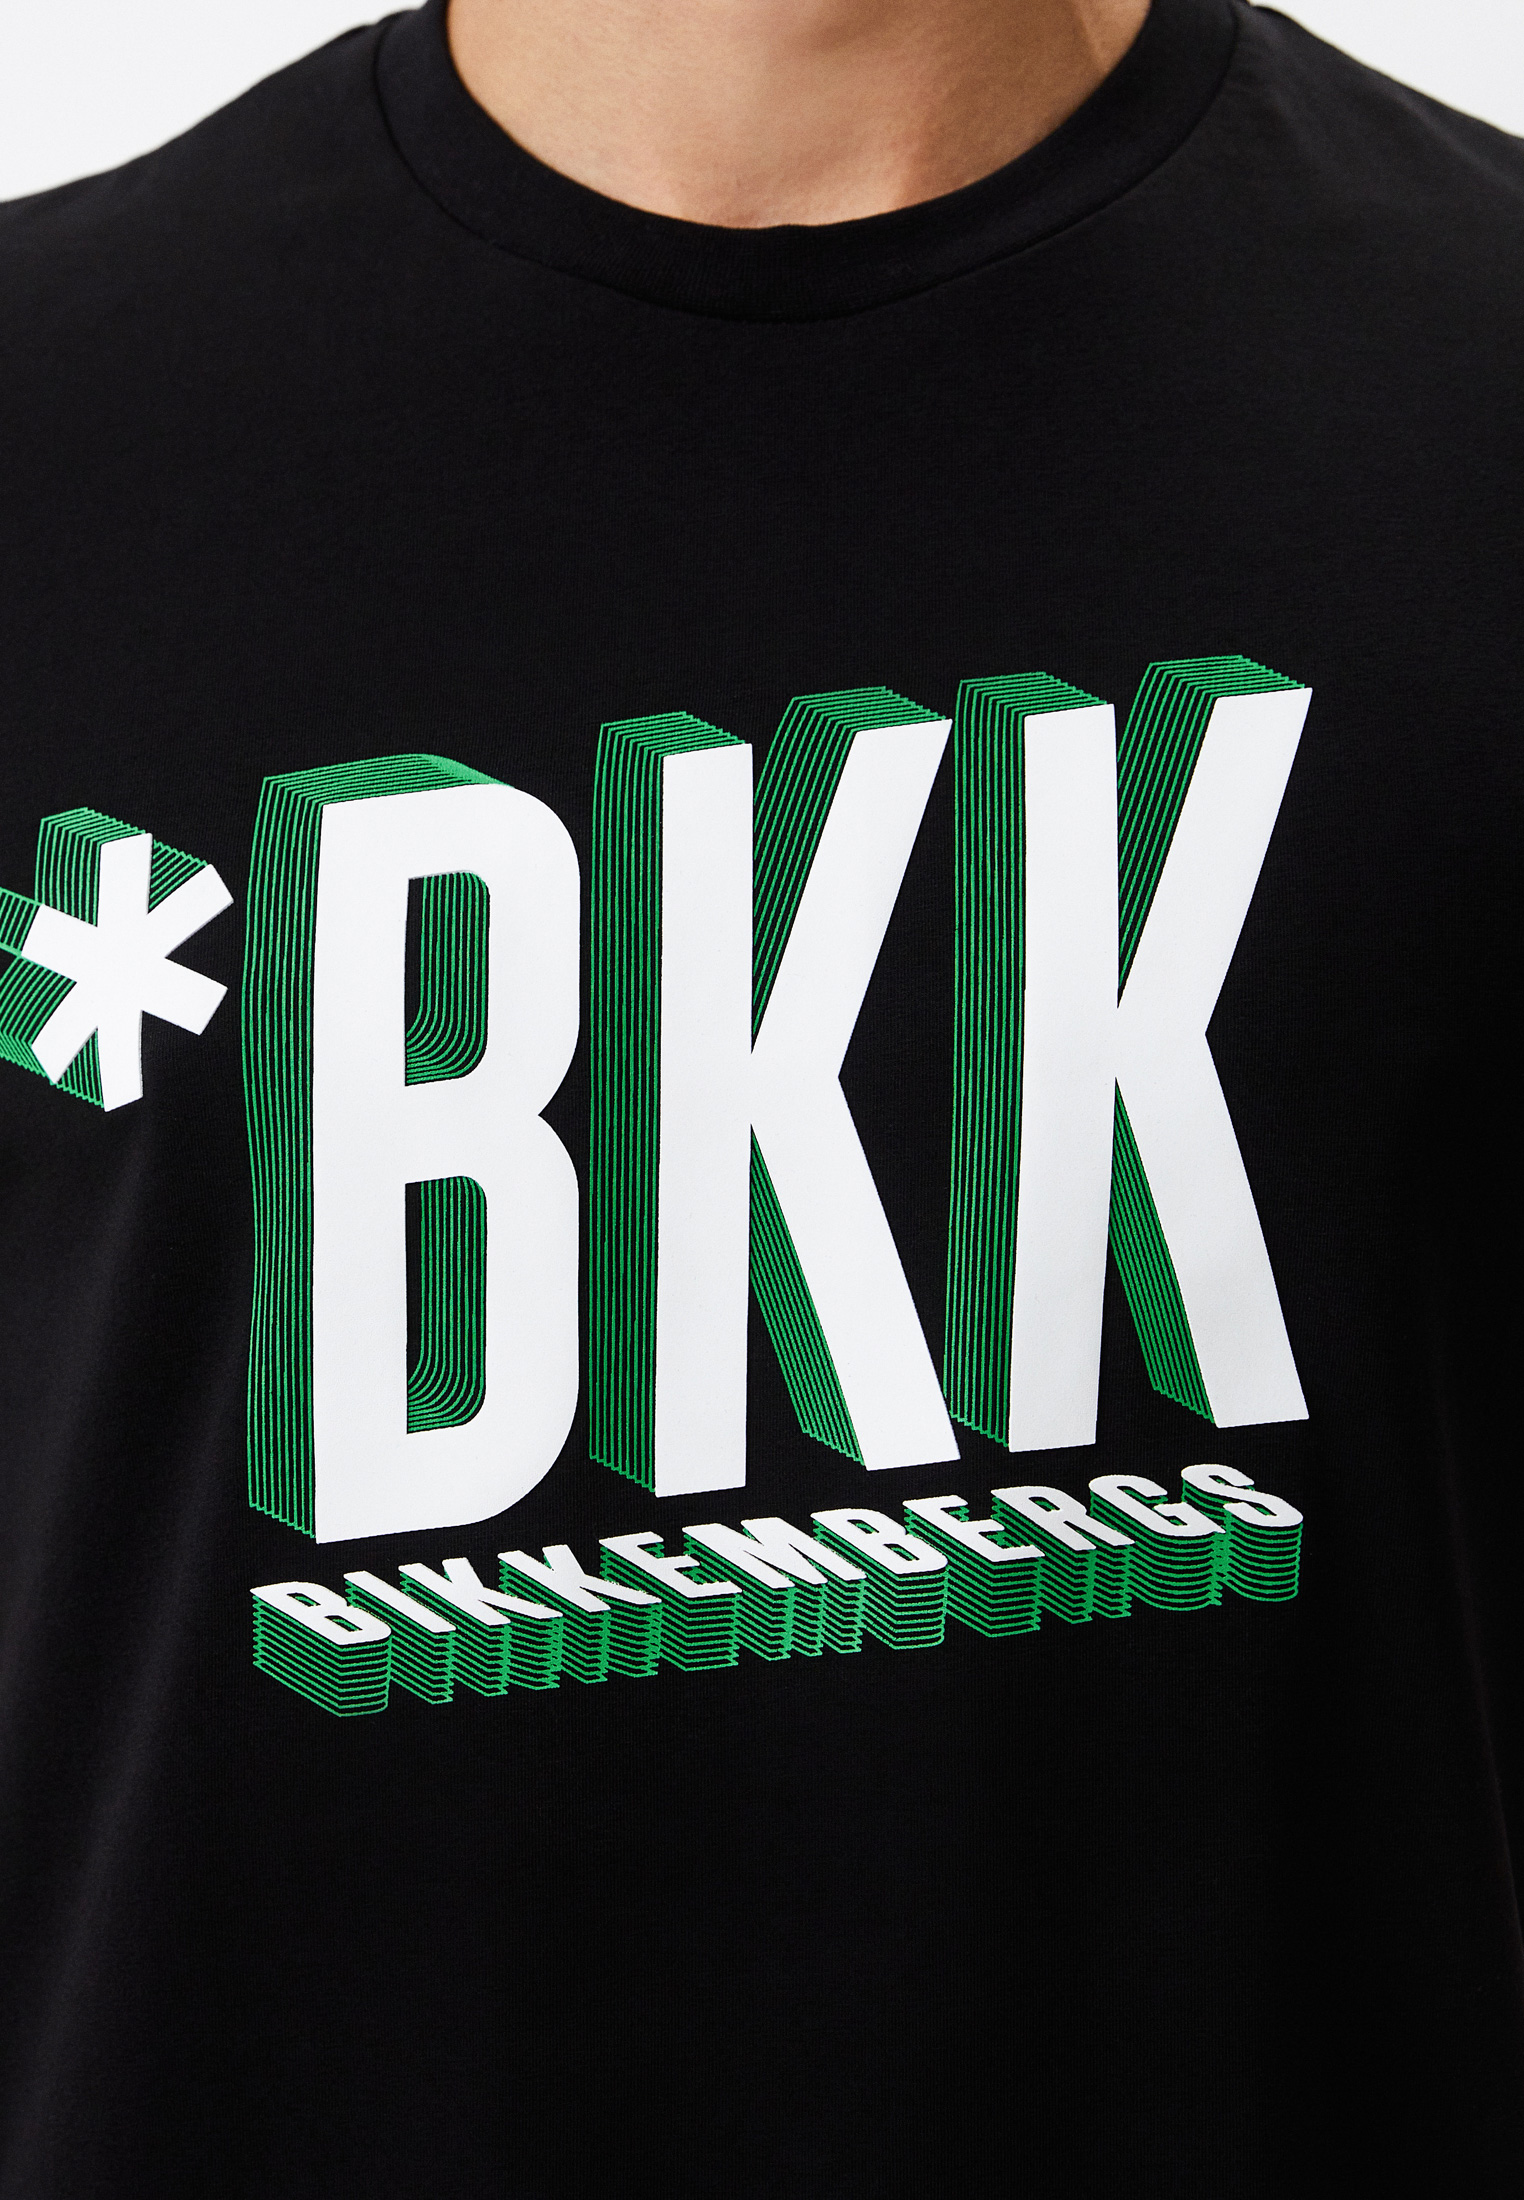 Мужская футболка Bikkembergs (Биккембергс) C 4 101 48 E 2296: изображение 9